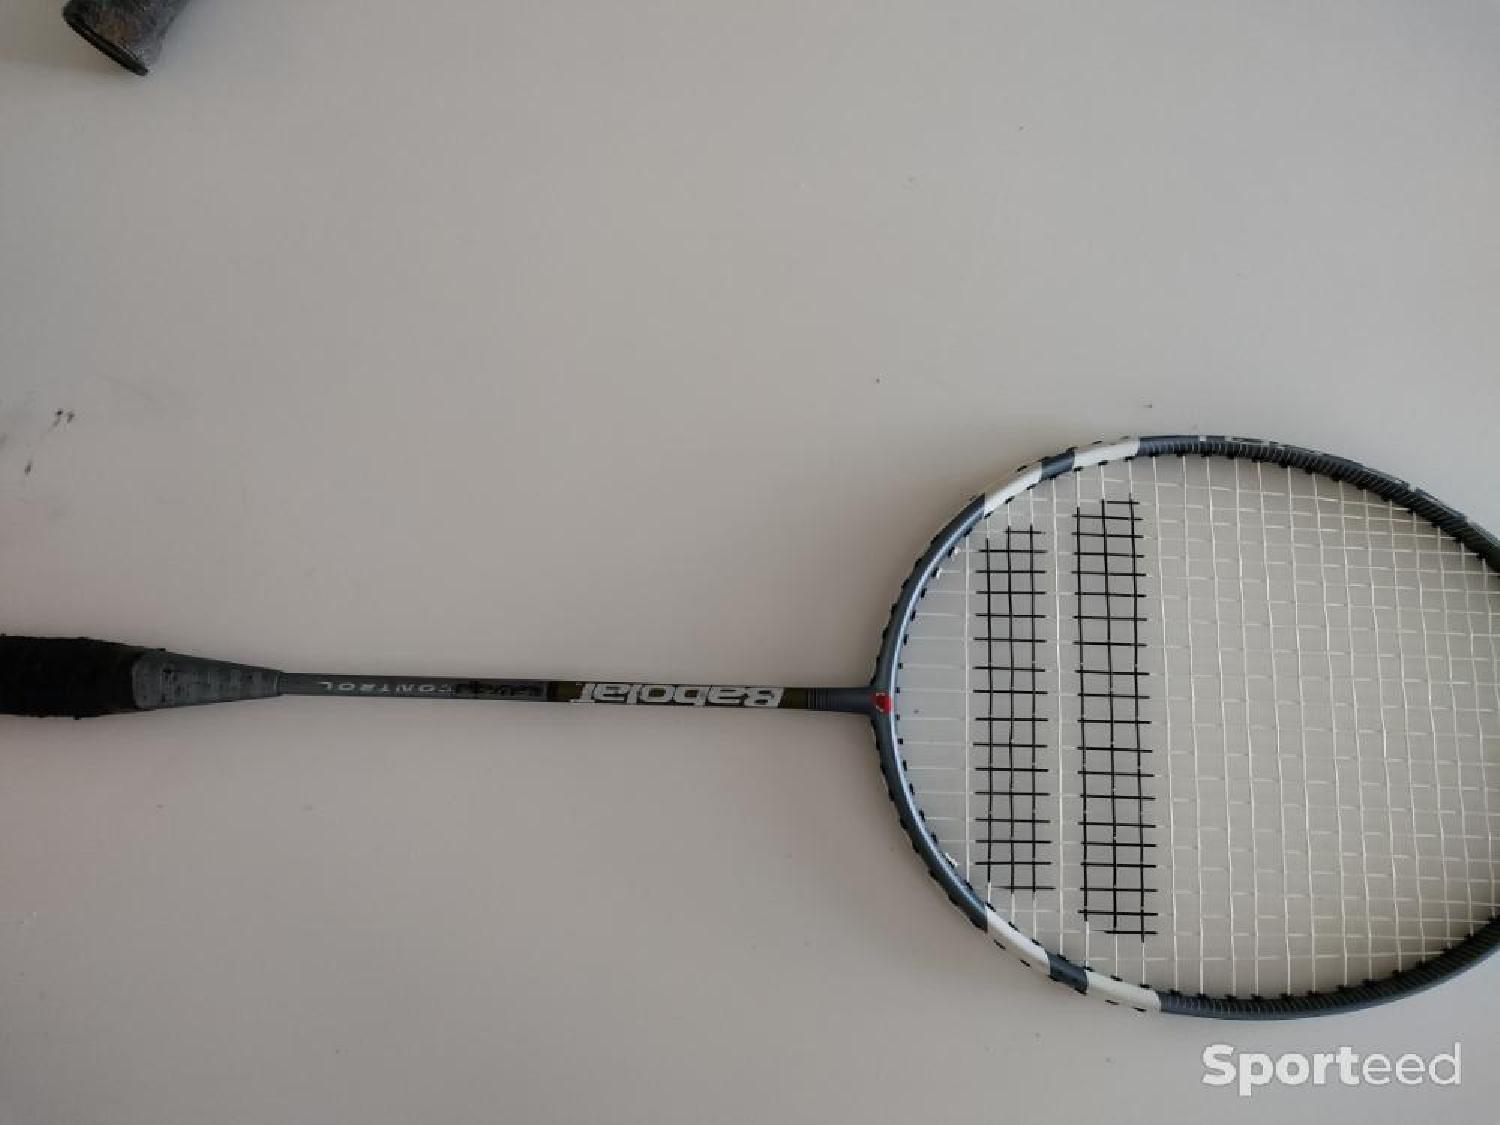 Raquette de badminton X-Act 85 avec housse gratuite